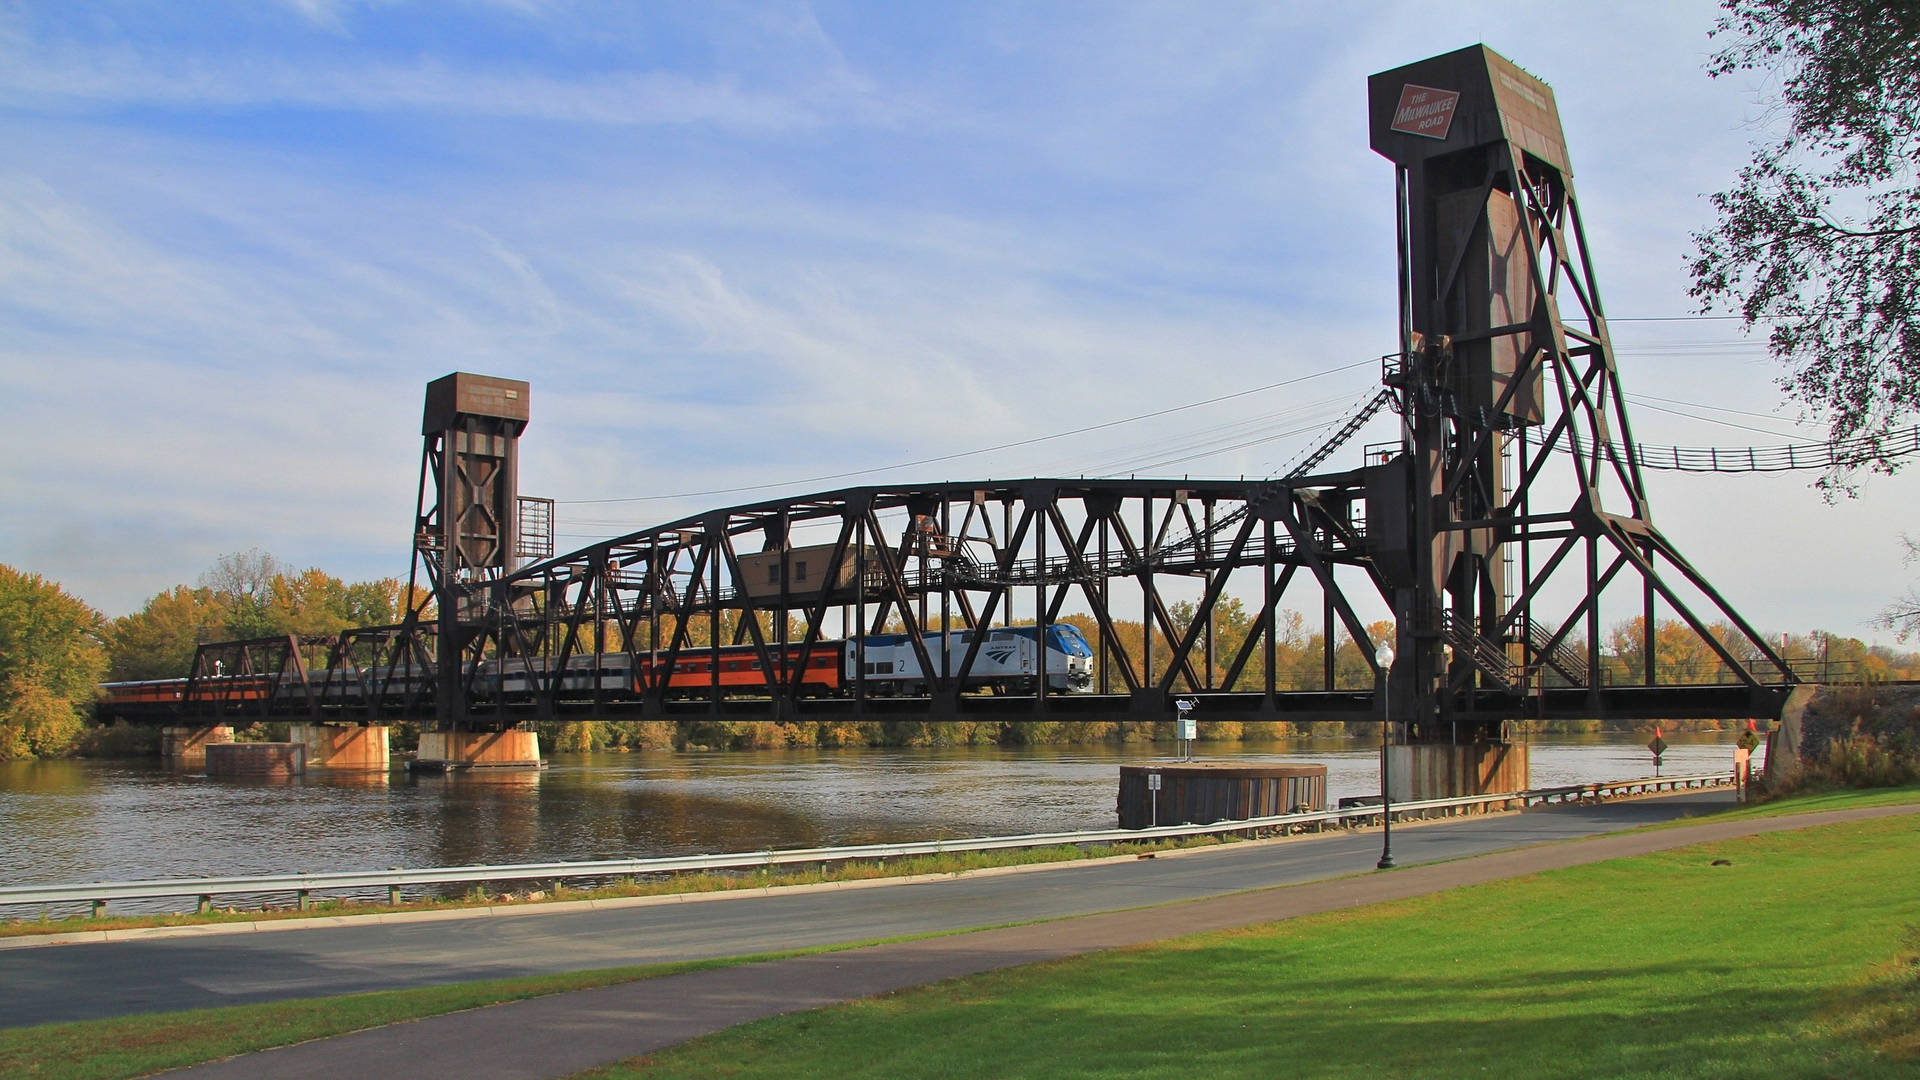 Minnesota Oldest Train Railway Bridge